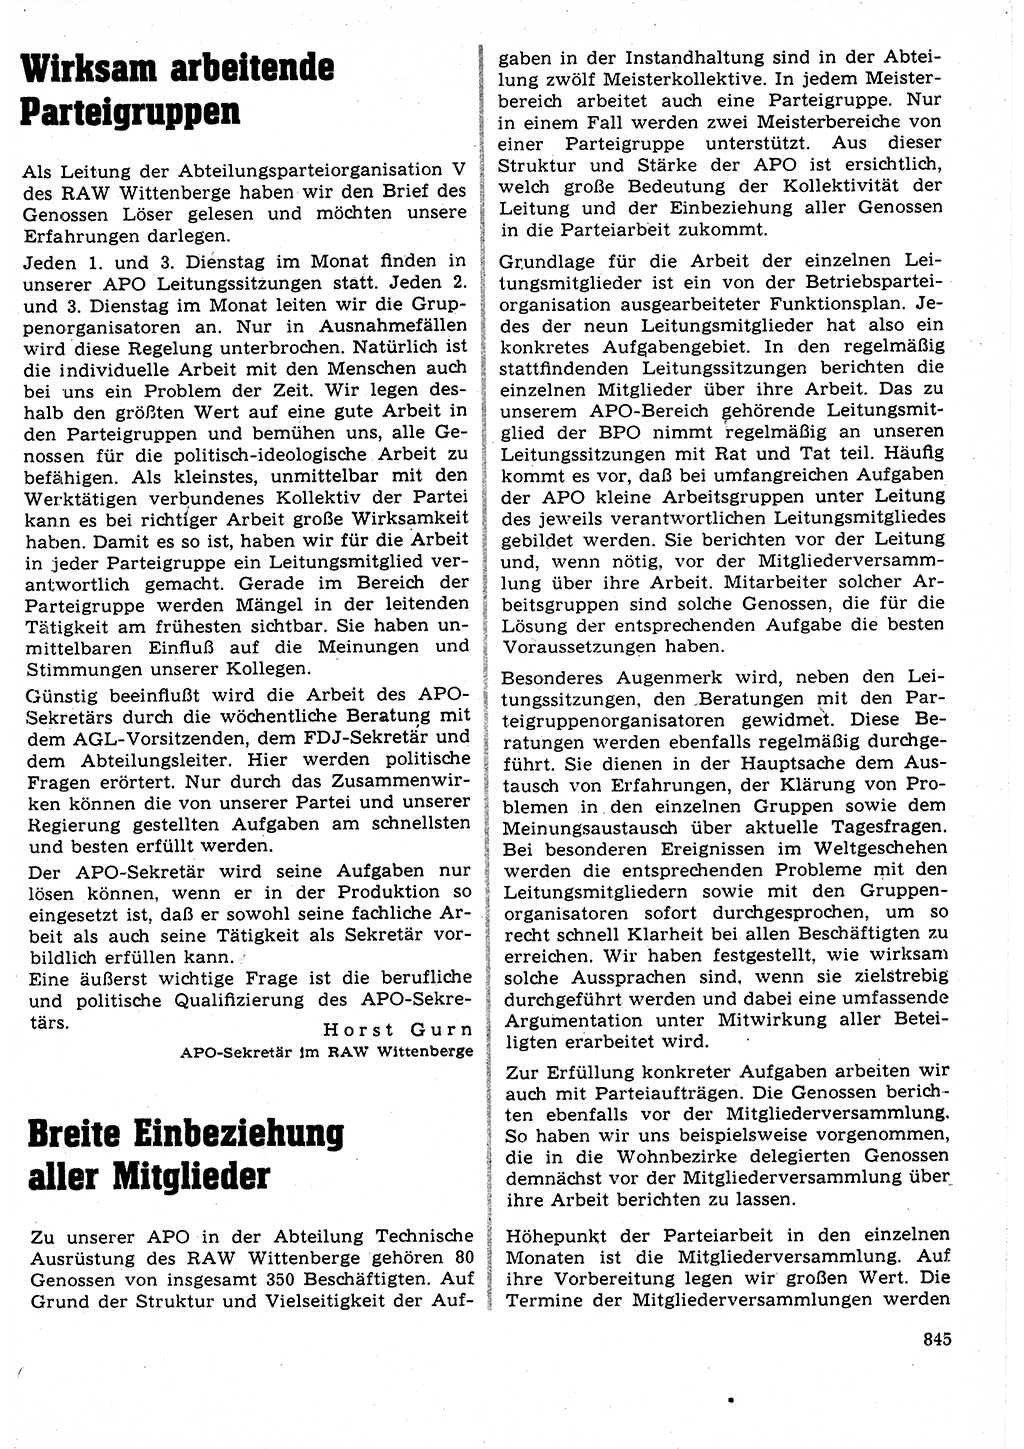 Neuer Weg (NW), Organ des Zentralkomitees (ZK) der SED (Sozialistische Einheitspartei Deutschlands) für Fragen des Parteilebens, 23. Jahrgang [Deutsche Demokratische Republik (DDR)] 1968, Seite 829 (NW ZK SED DDR 1968, S. 829)